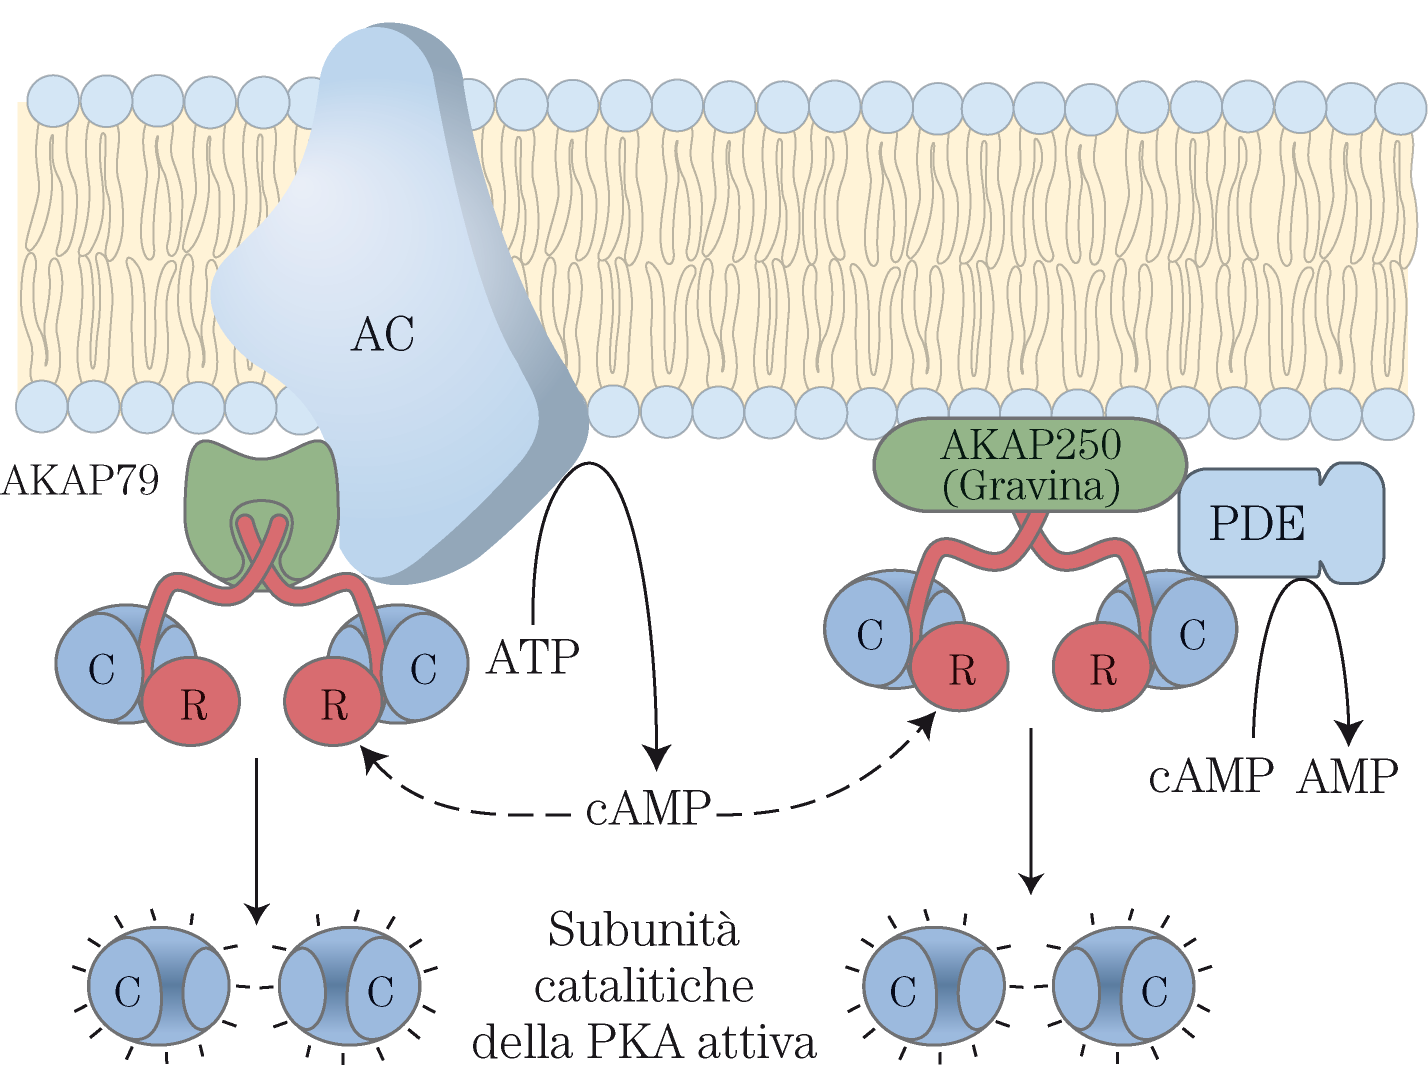 Le proteine AKAP sono proteine adattatrici multivalenti che ancorano la PKA a strutture